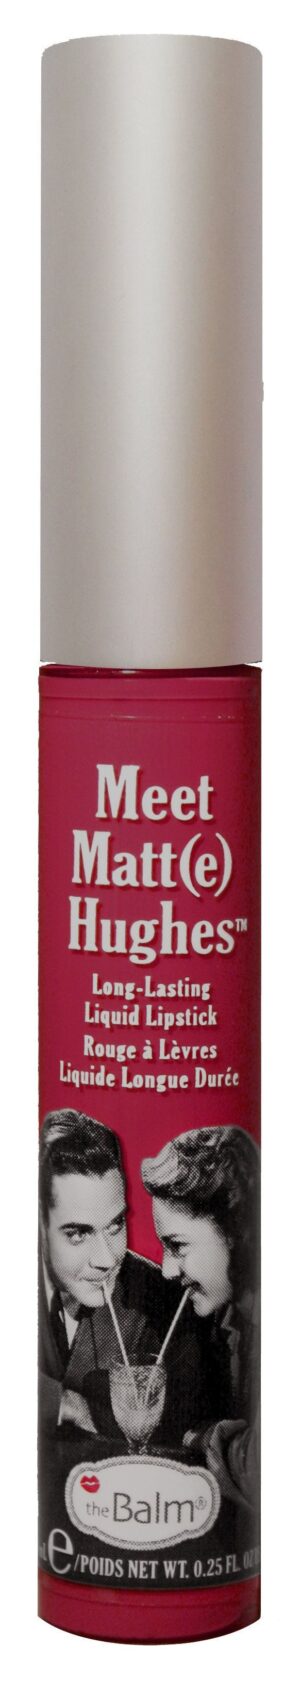 Meet Matt(e) Hughes